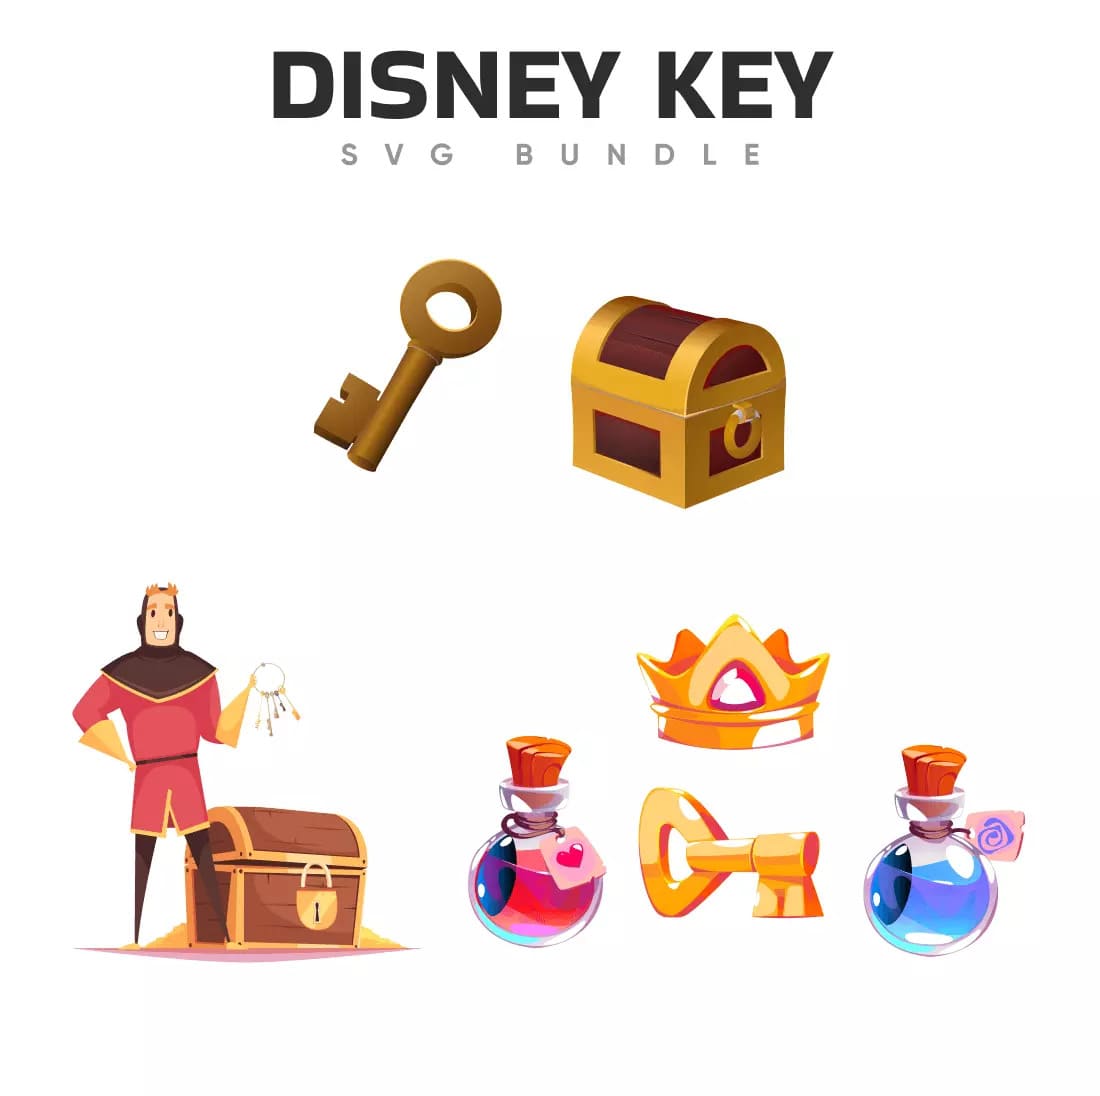 Disney Key SVG Bundle Preview.